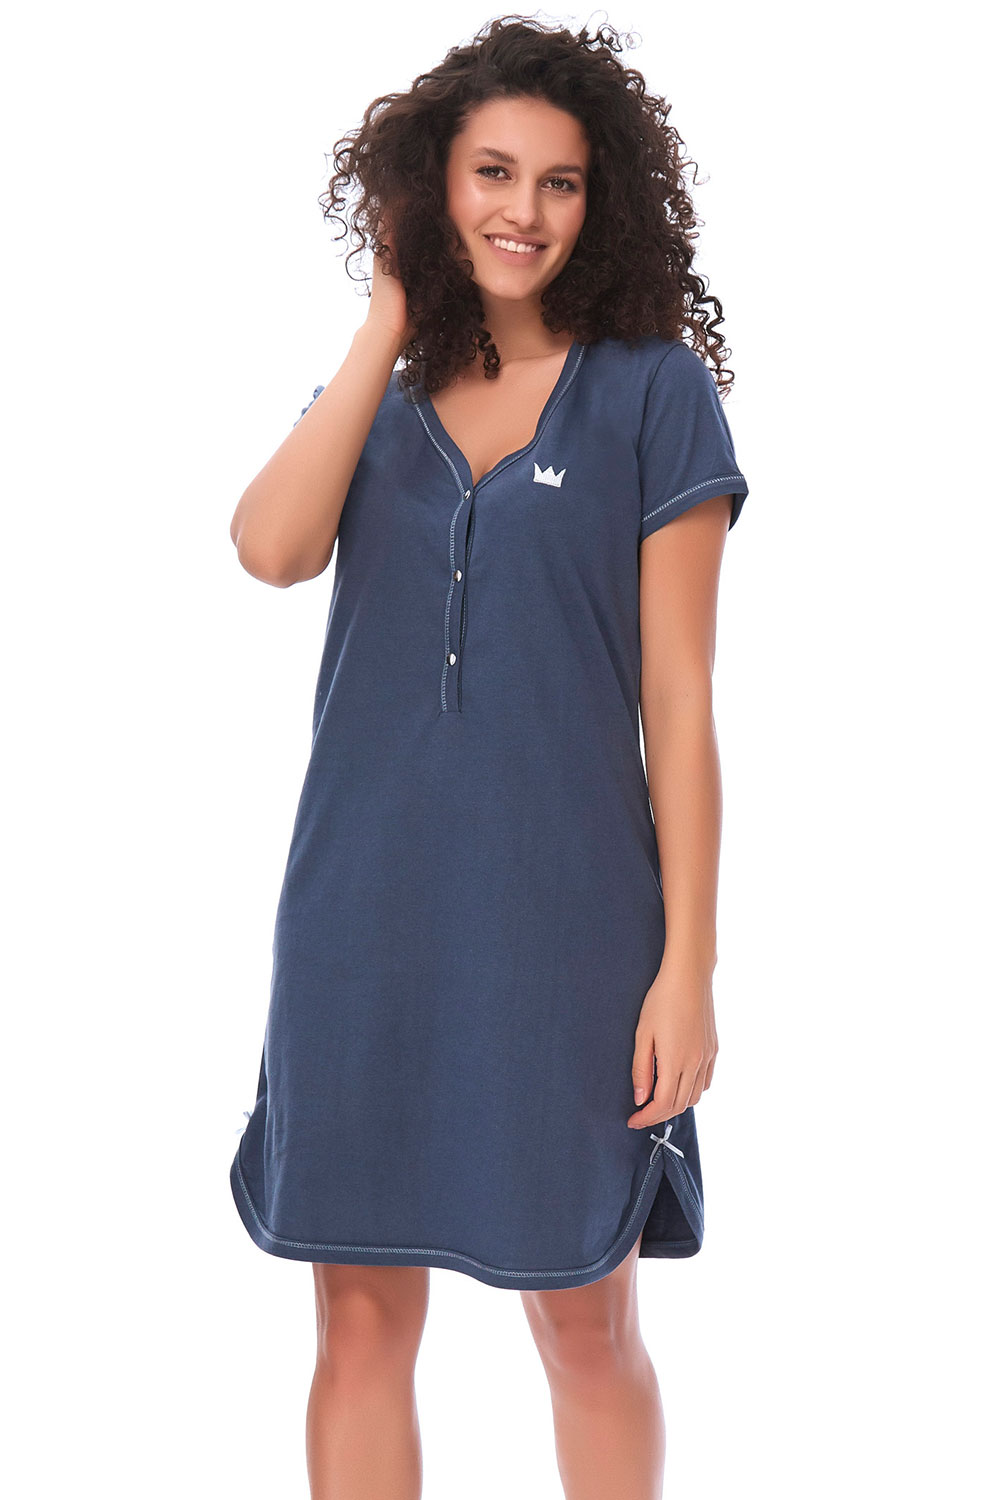 Dn-nightwear TCB.9505 - koszulka ciążowa oraz do karmienia - Dobranocka